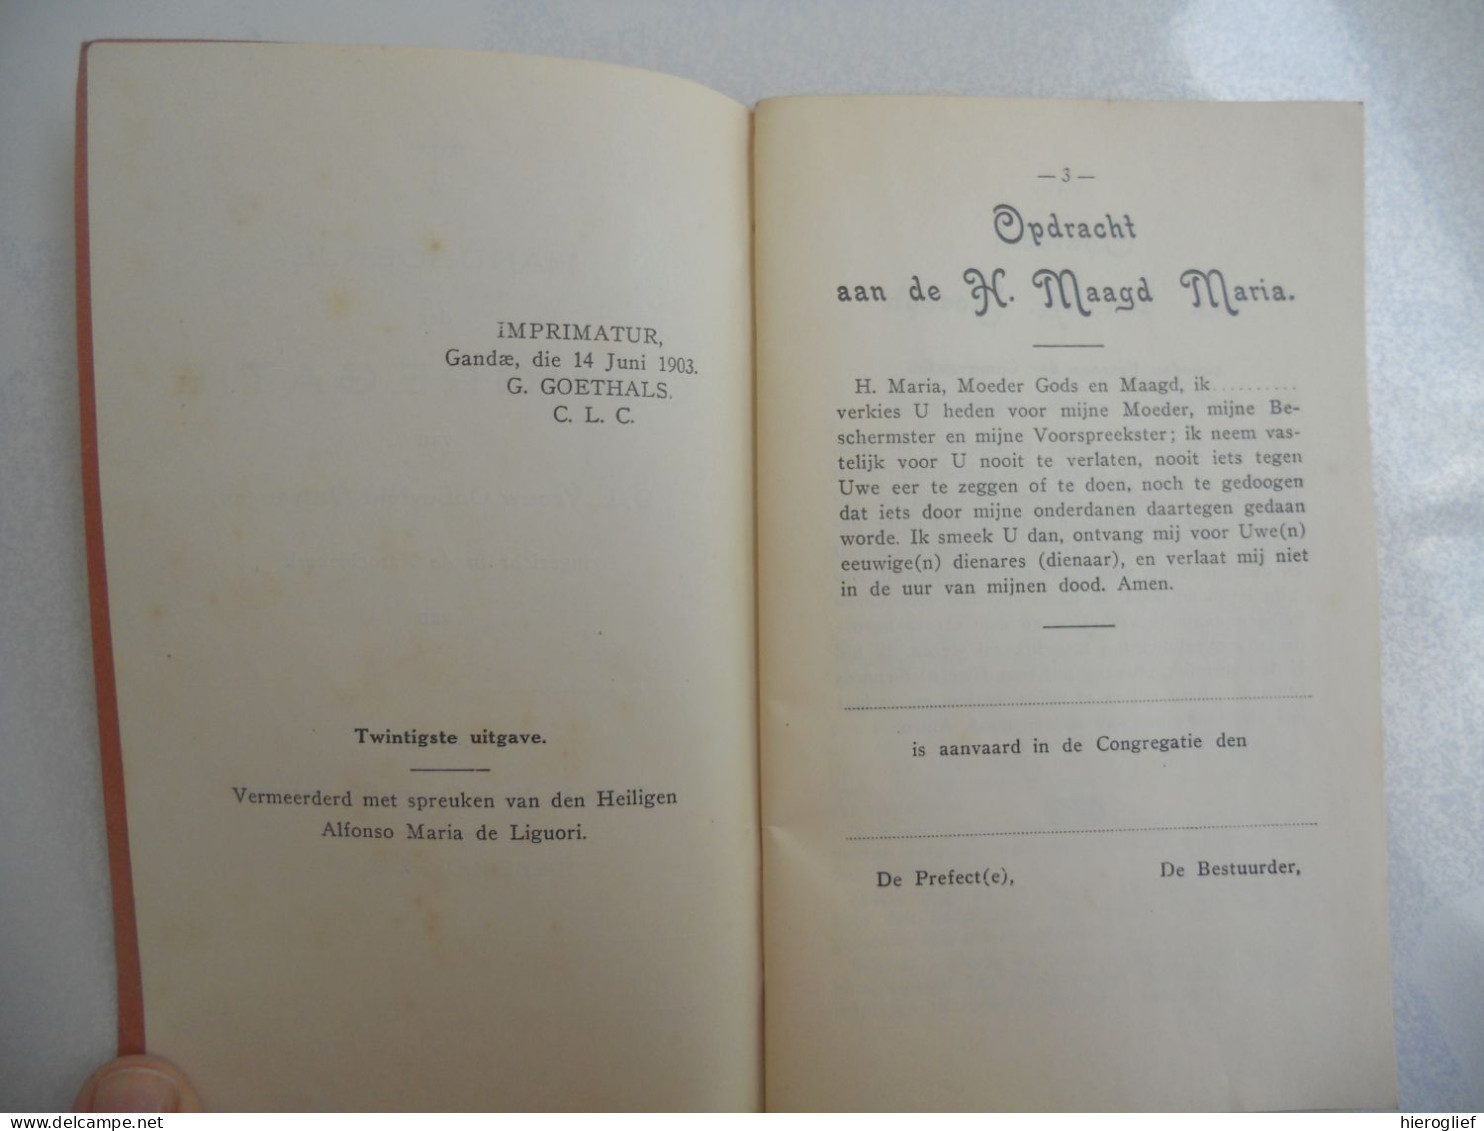 Handboekje Der CONGREGATIE Van O.L. Vrouw Onbevlekt Ontvangen / Impr 1903 Denderrmonde Van Lantschoot Moens - Antique